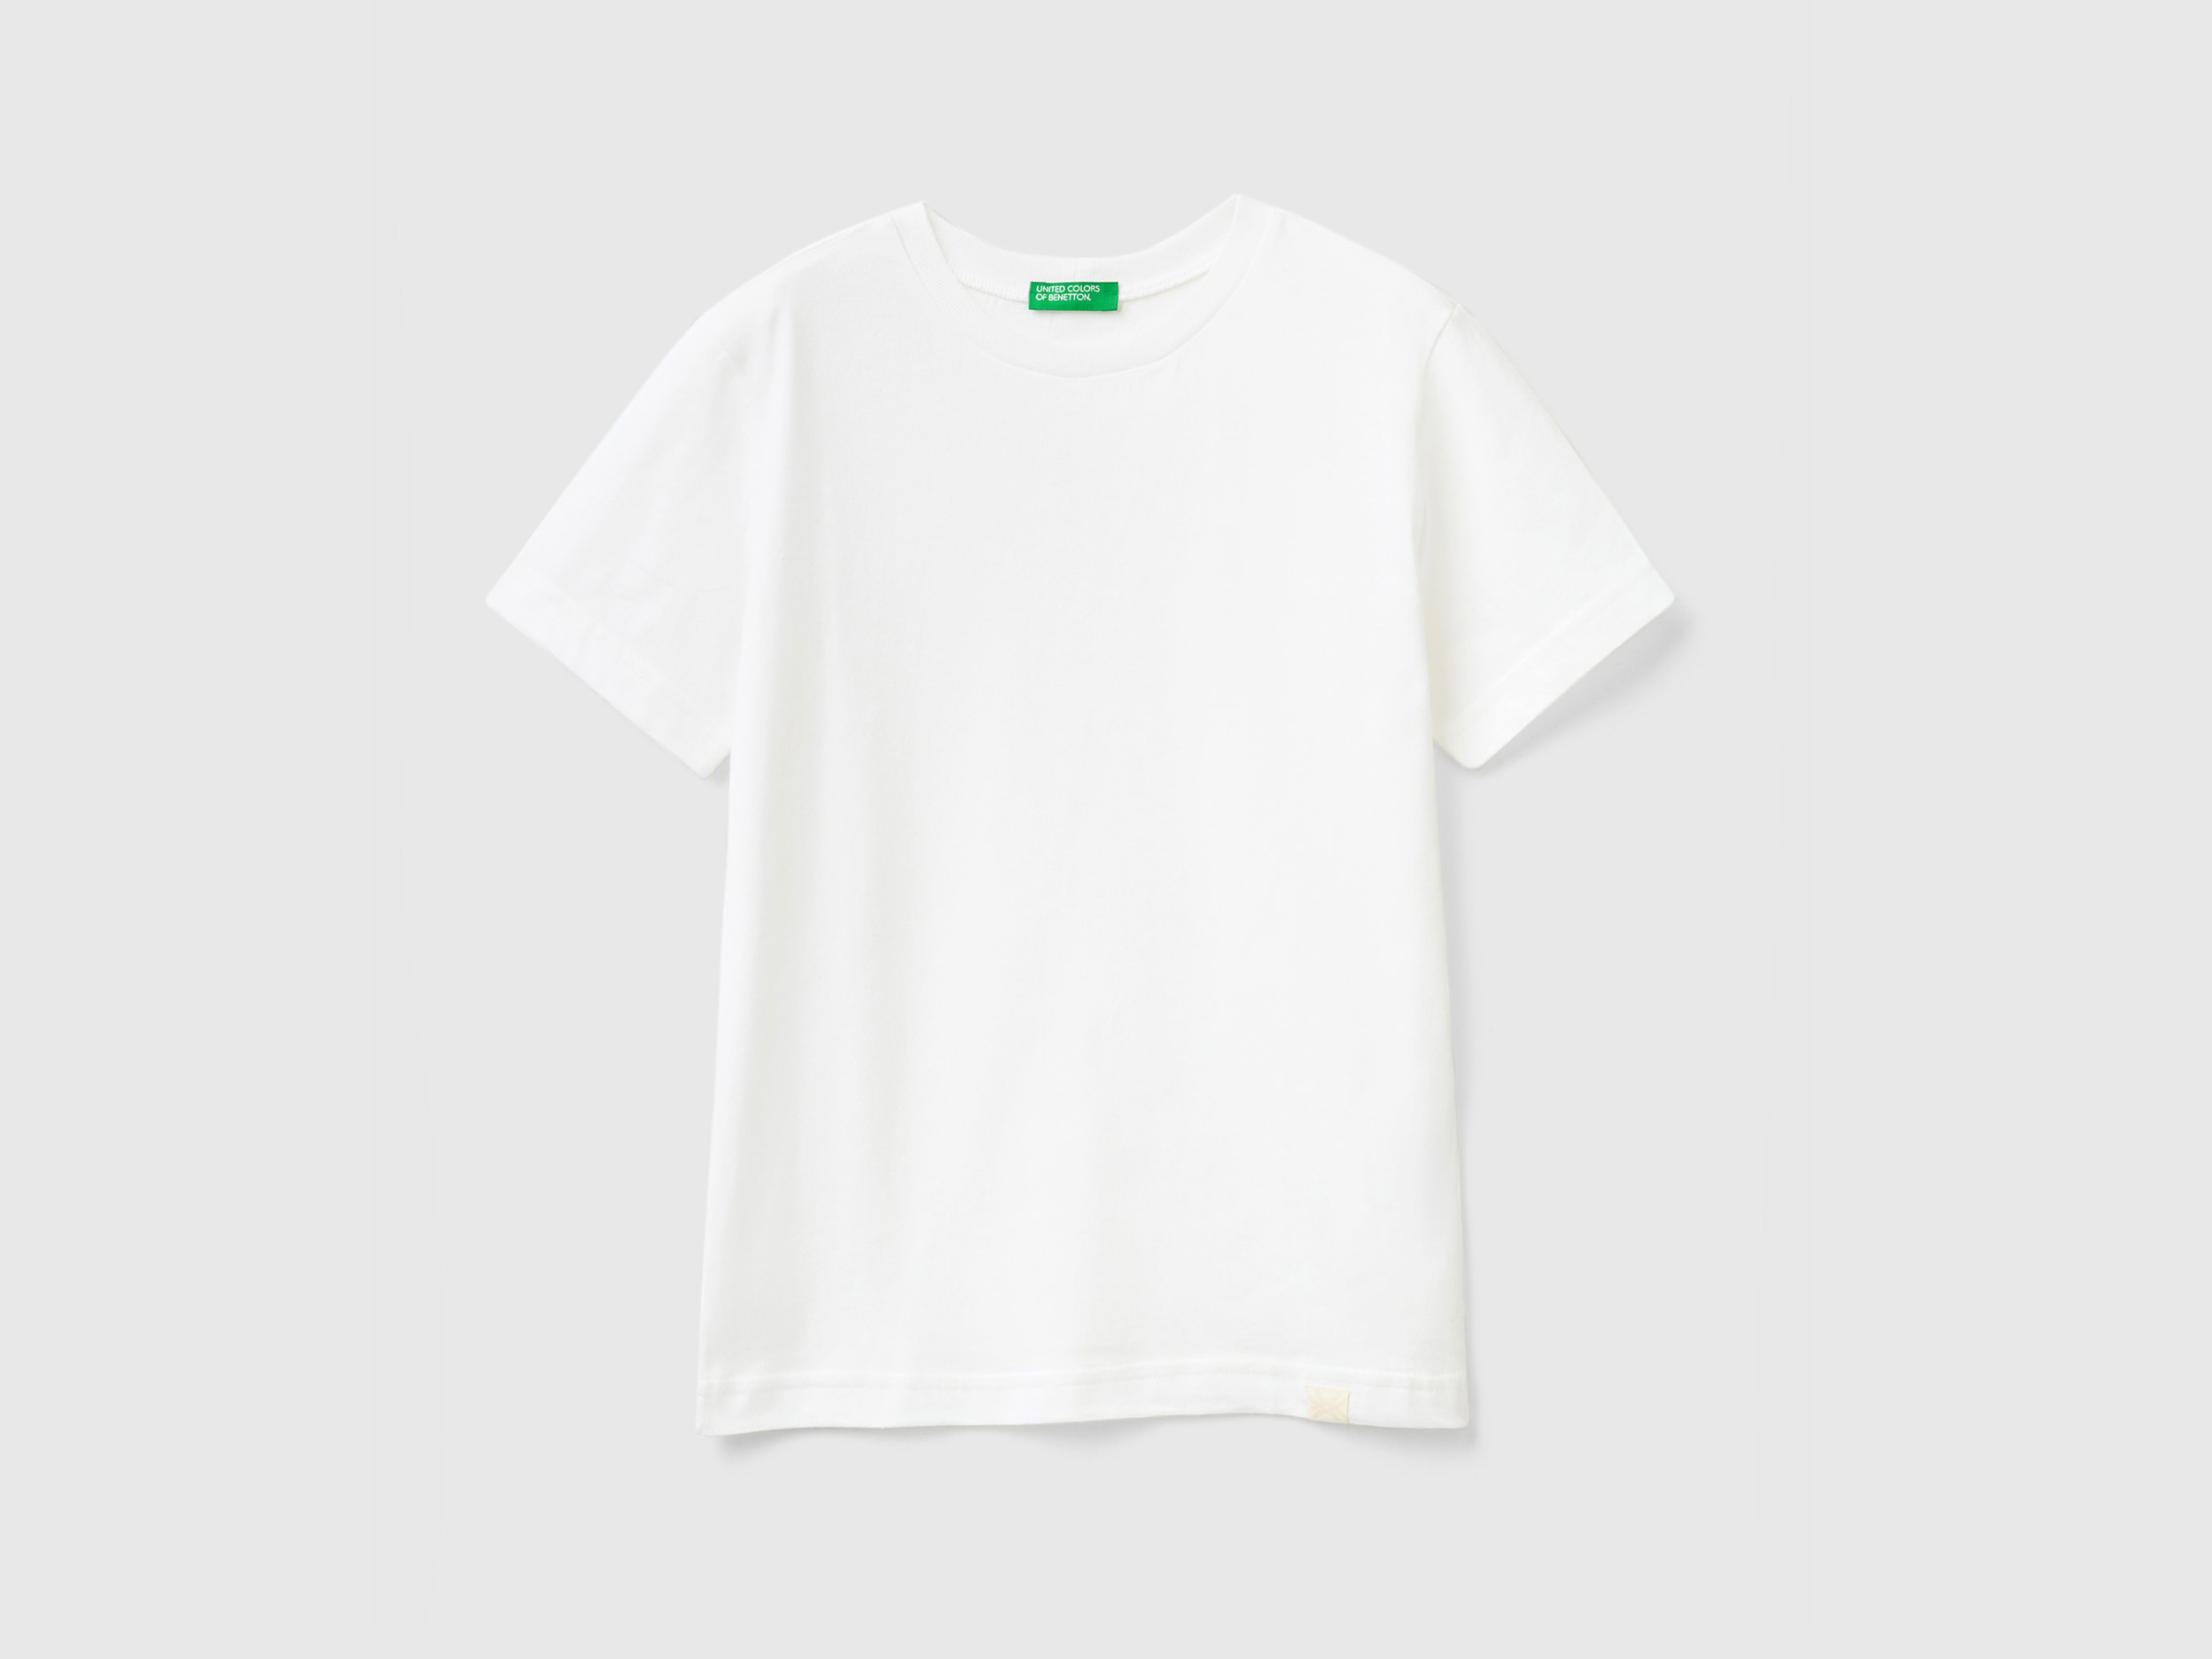 Benetton, Organic Cotton T-shirt, size 2XL, White, Kids